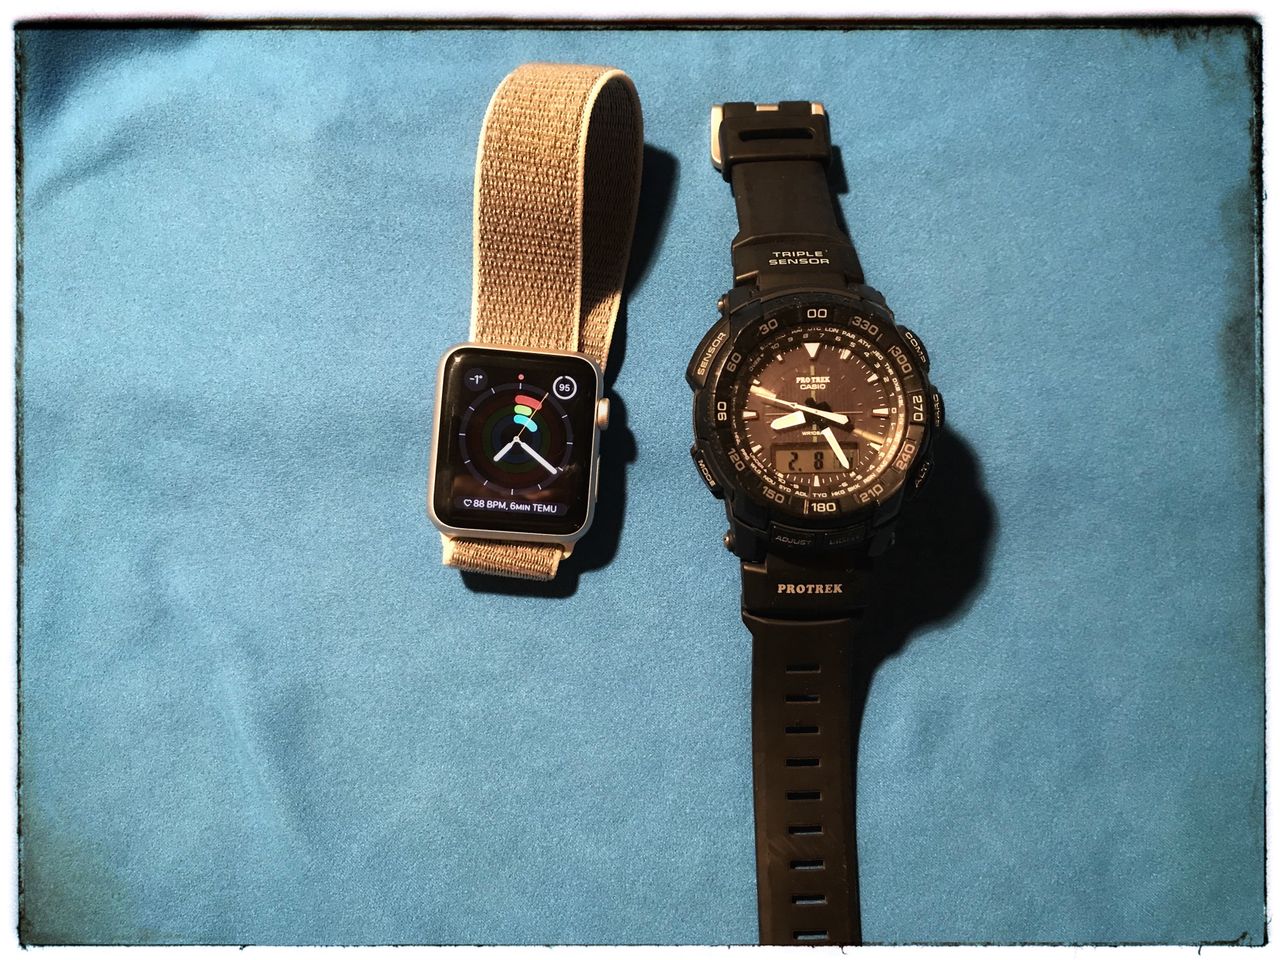 Choć Apple Watch jest dość odporny w czasie codziennego użytkowania, z pewnością konkurencji Casio G-Shock lub Protrek nie wygra.